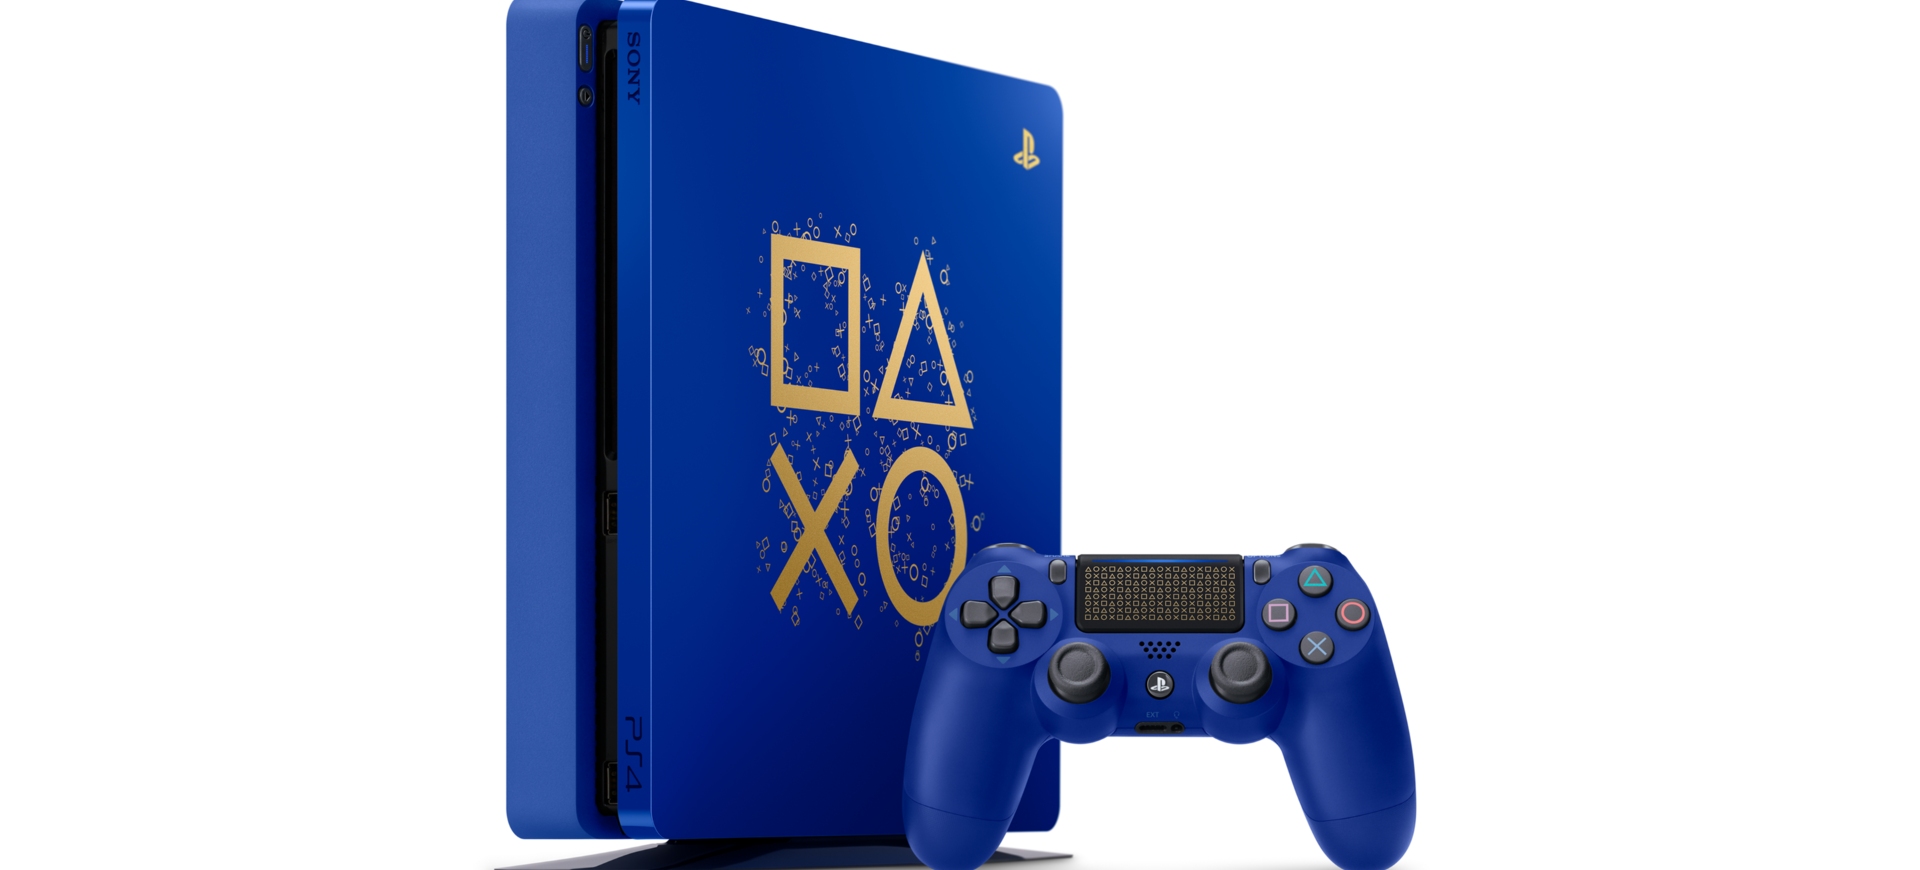 Sony giới thiệu phiên bản PlayStation 4 đặc biệt nhân sự kiện "Days of Play" - Tin Game